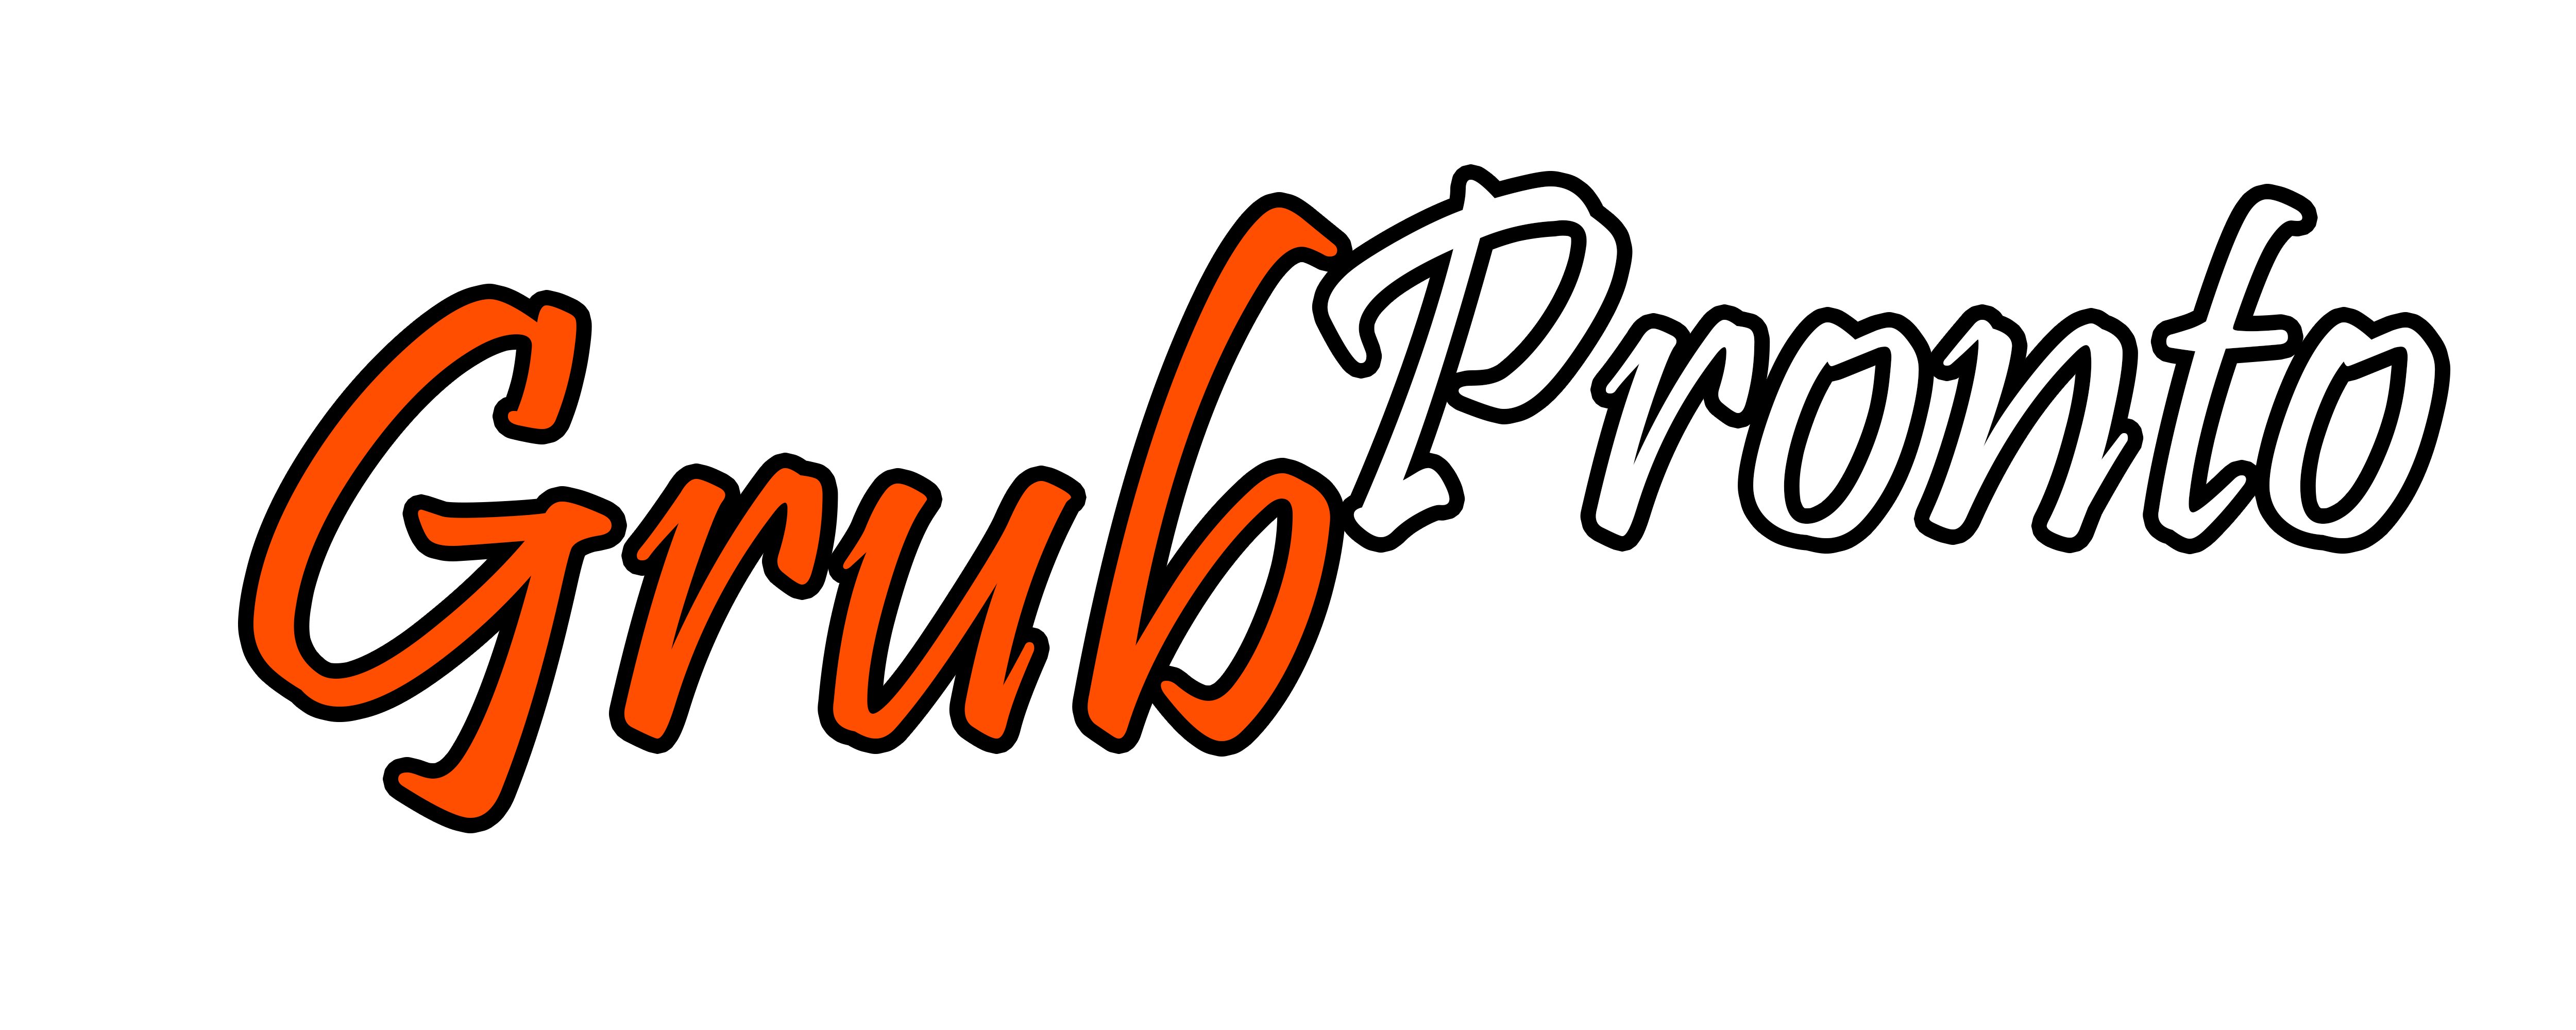 Grub Pronto - Commission Free Online Ordering System, Website Design, Menu Design & Printing for Restaurants